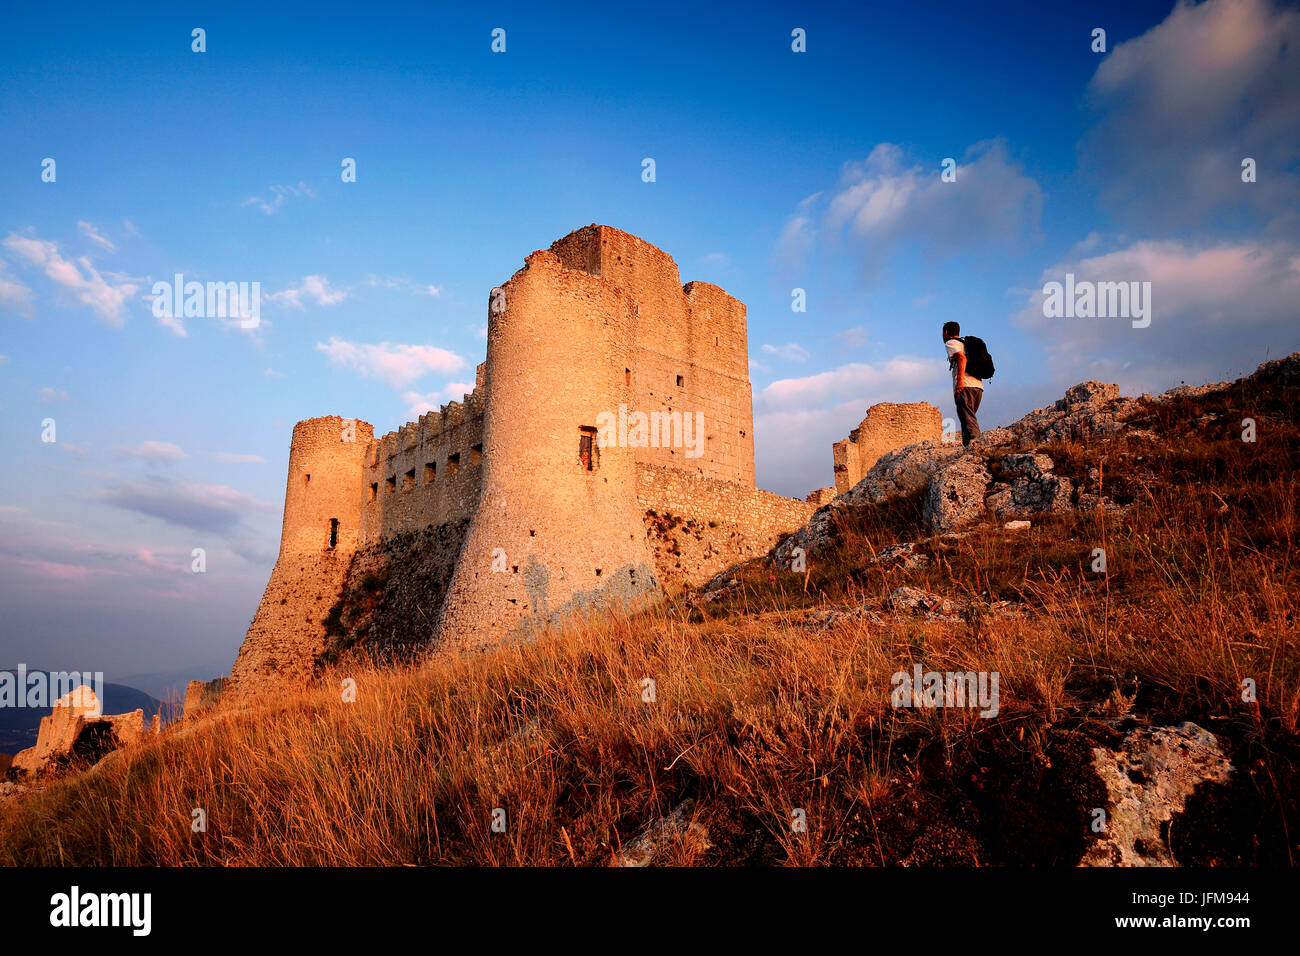 Antico castello medievale di Rocca Calascio al tramonto, l'Aquila district, Abruzzo, Italia Foto Stock